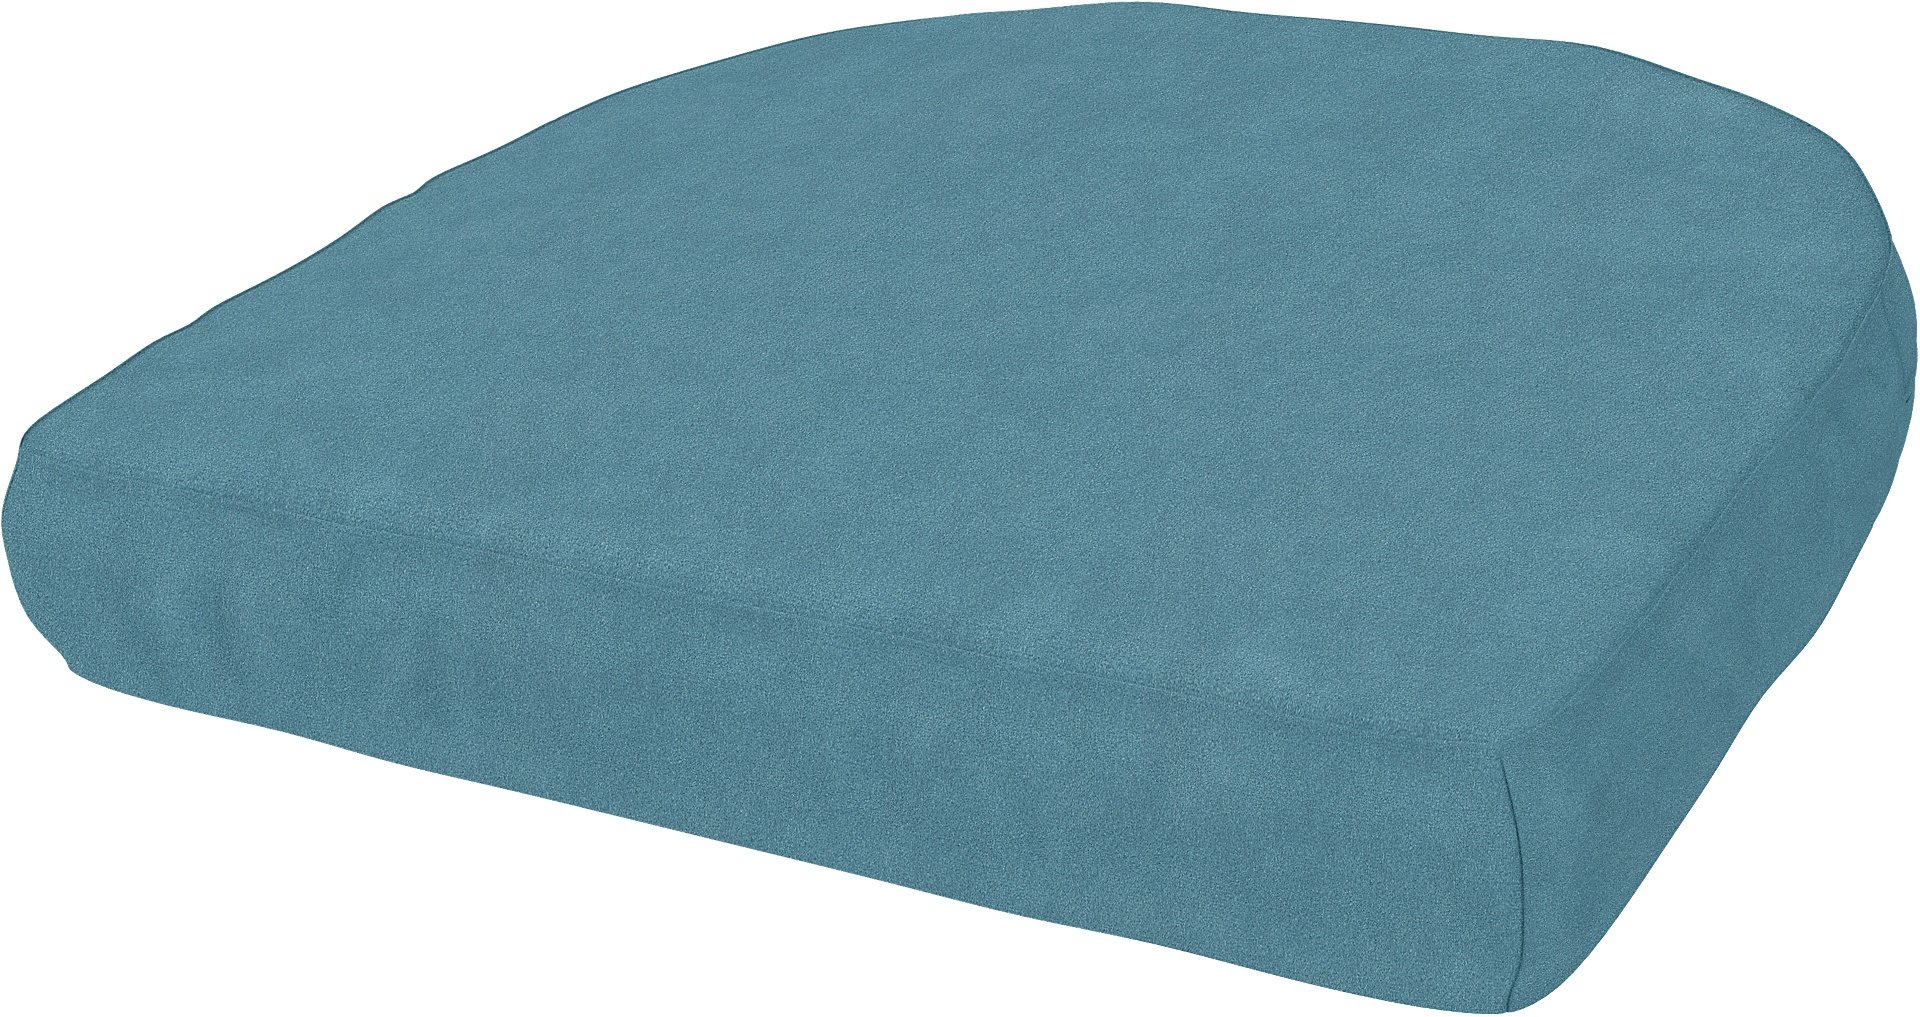 IKEA - Mastholmen Armchair Cushion Cover, Dusk Blue, Outdoor - Bemz